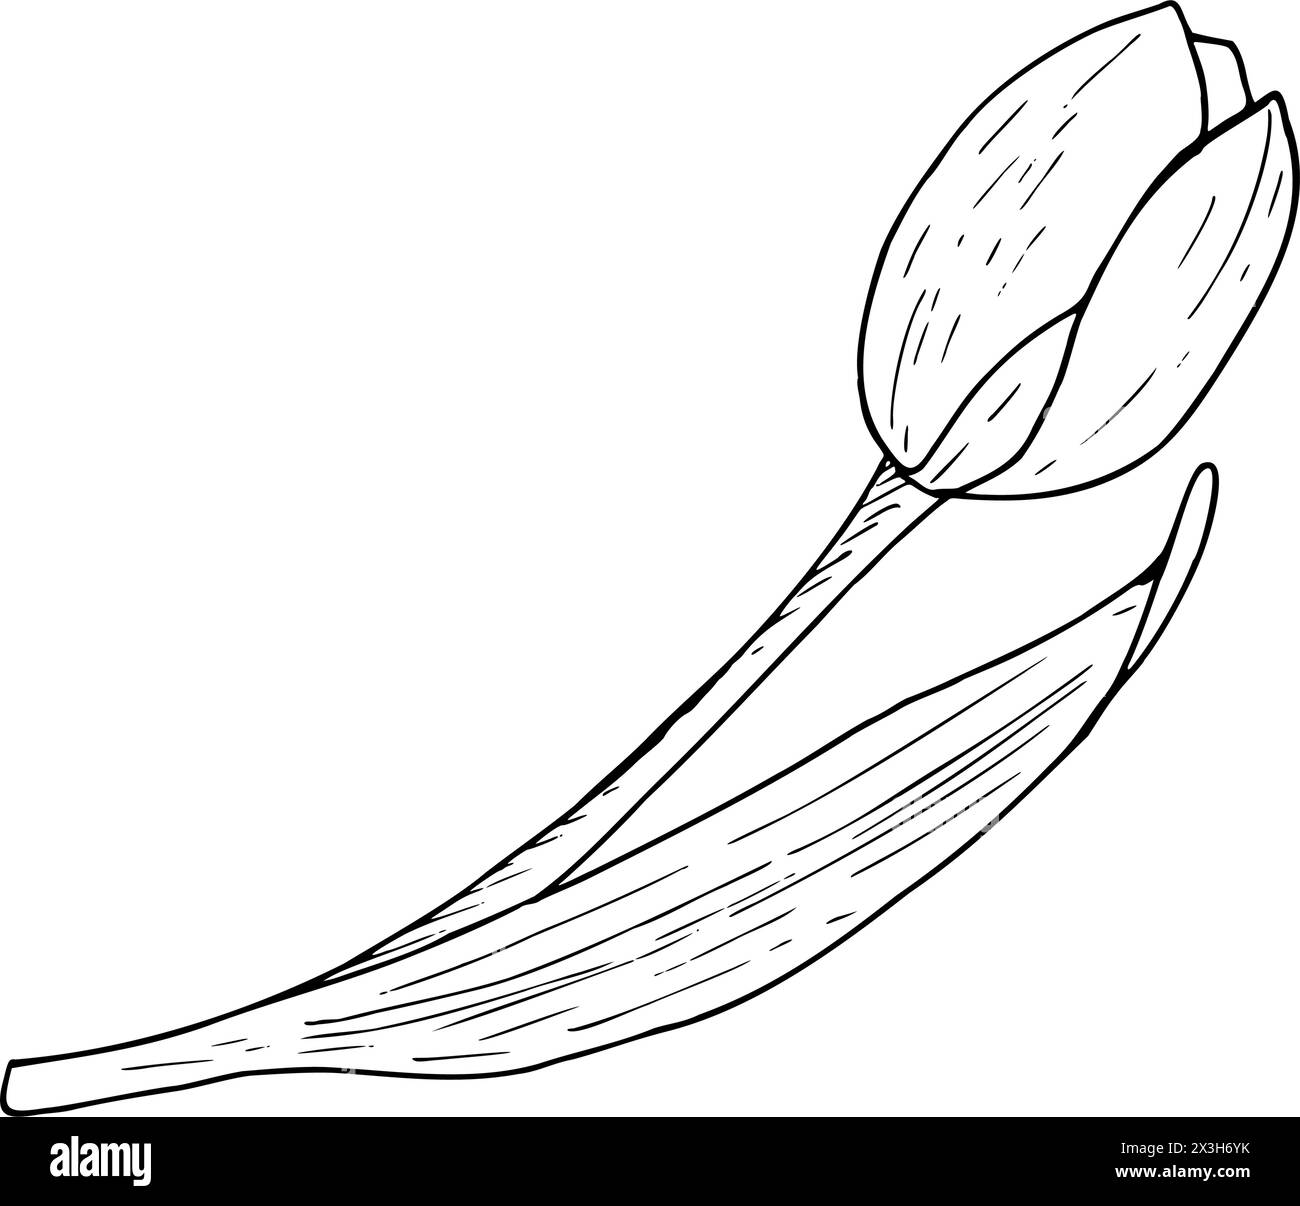 Illustration vectorielle de fleurs de tulipe. Dessin graphique de contour noir de tête d'ampoule à feuilles courbées. Carte de voeux en fleurs botaniques. Silhouette de contour de ligne d'encre Illustration de Vecteur